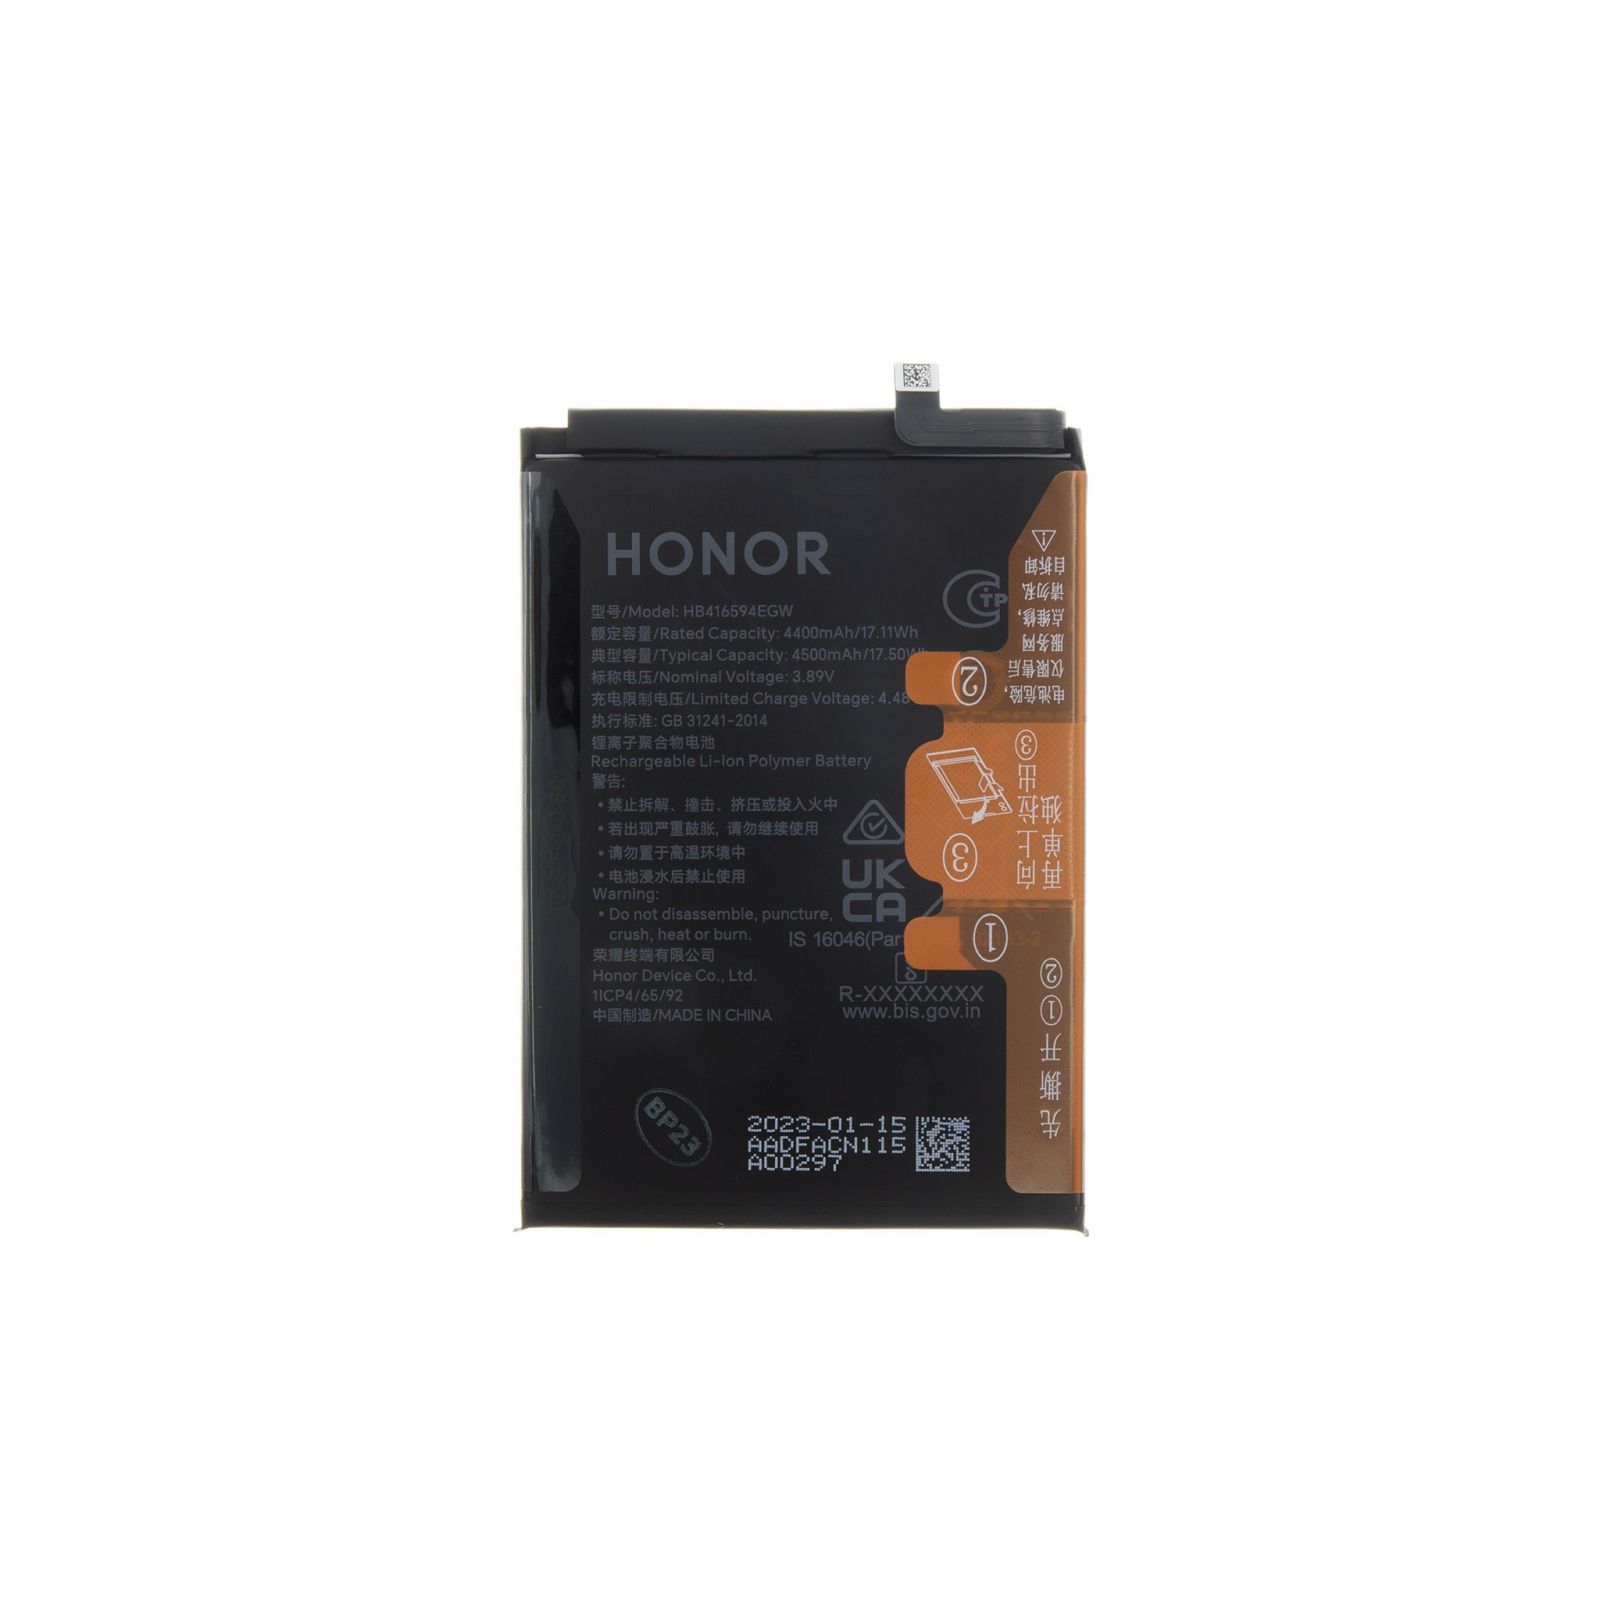 HB416594EGW Honor Baterie 4400mAh Li-Pol (Service Pack) - Originál